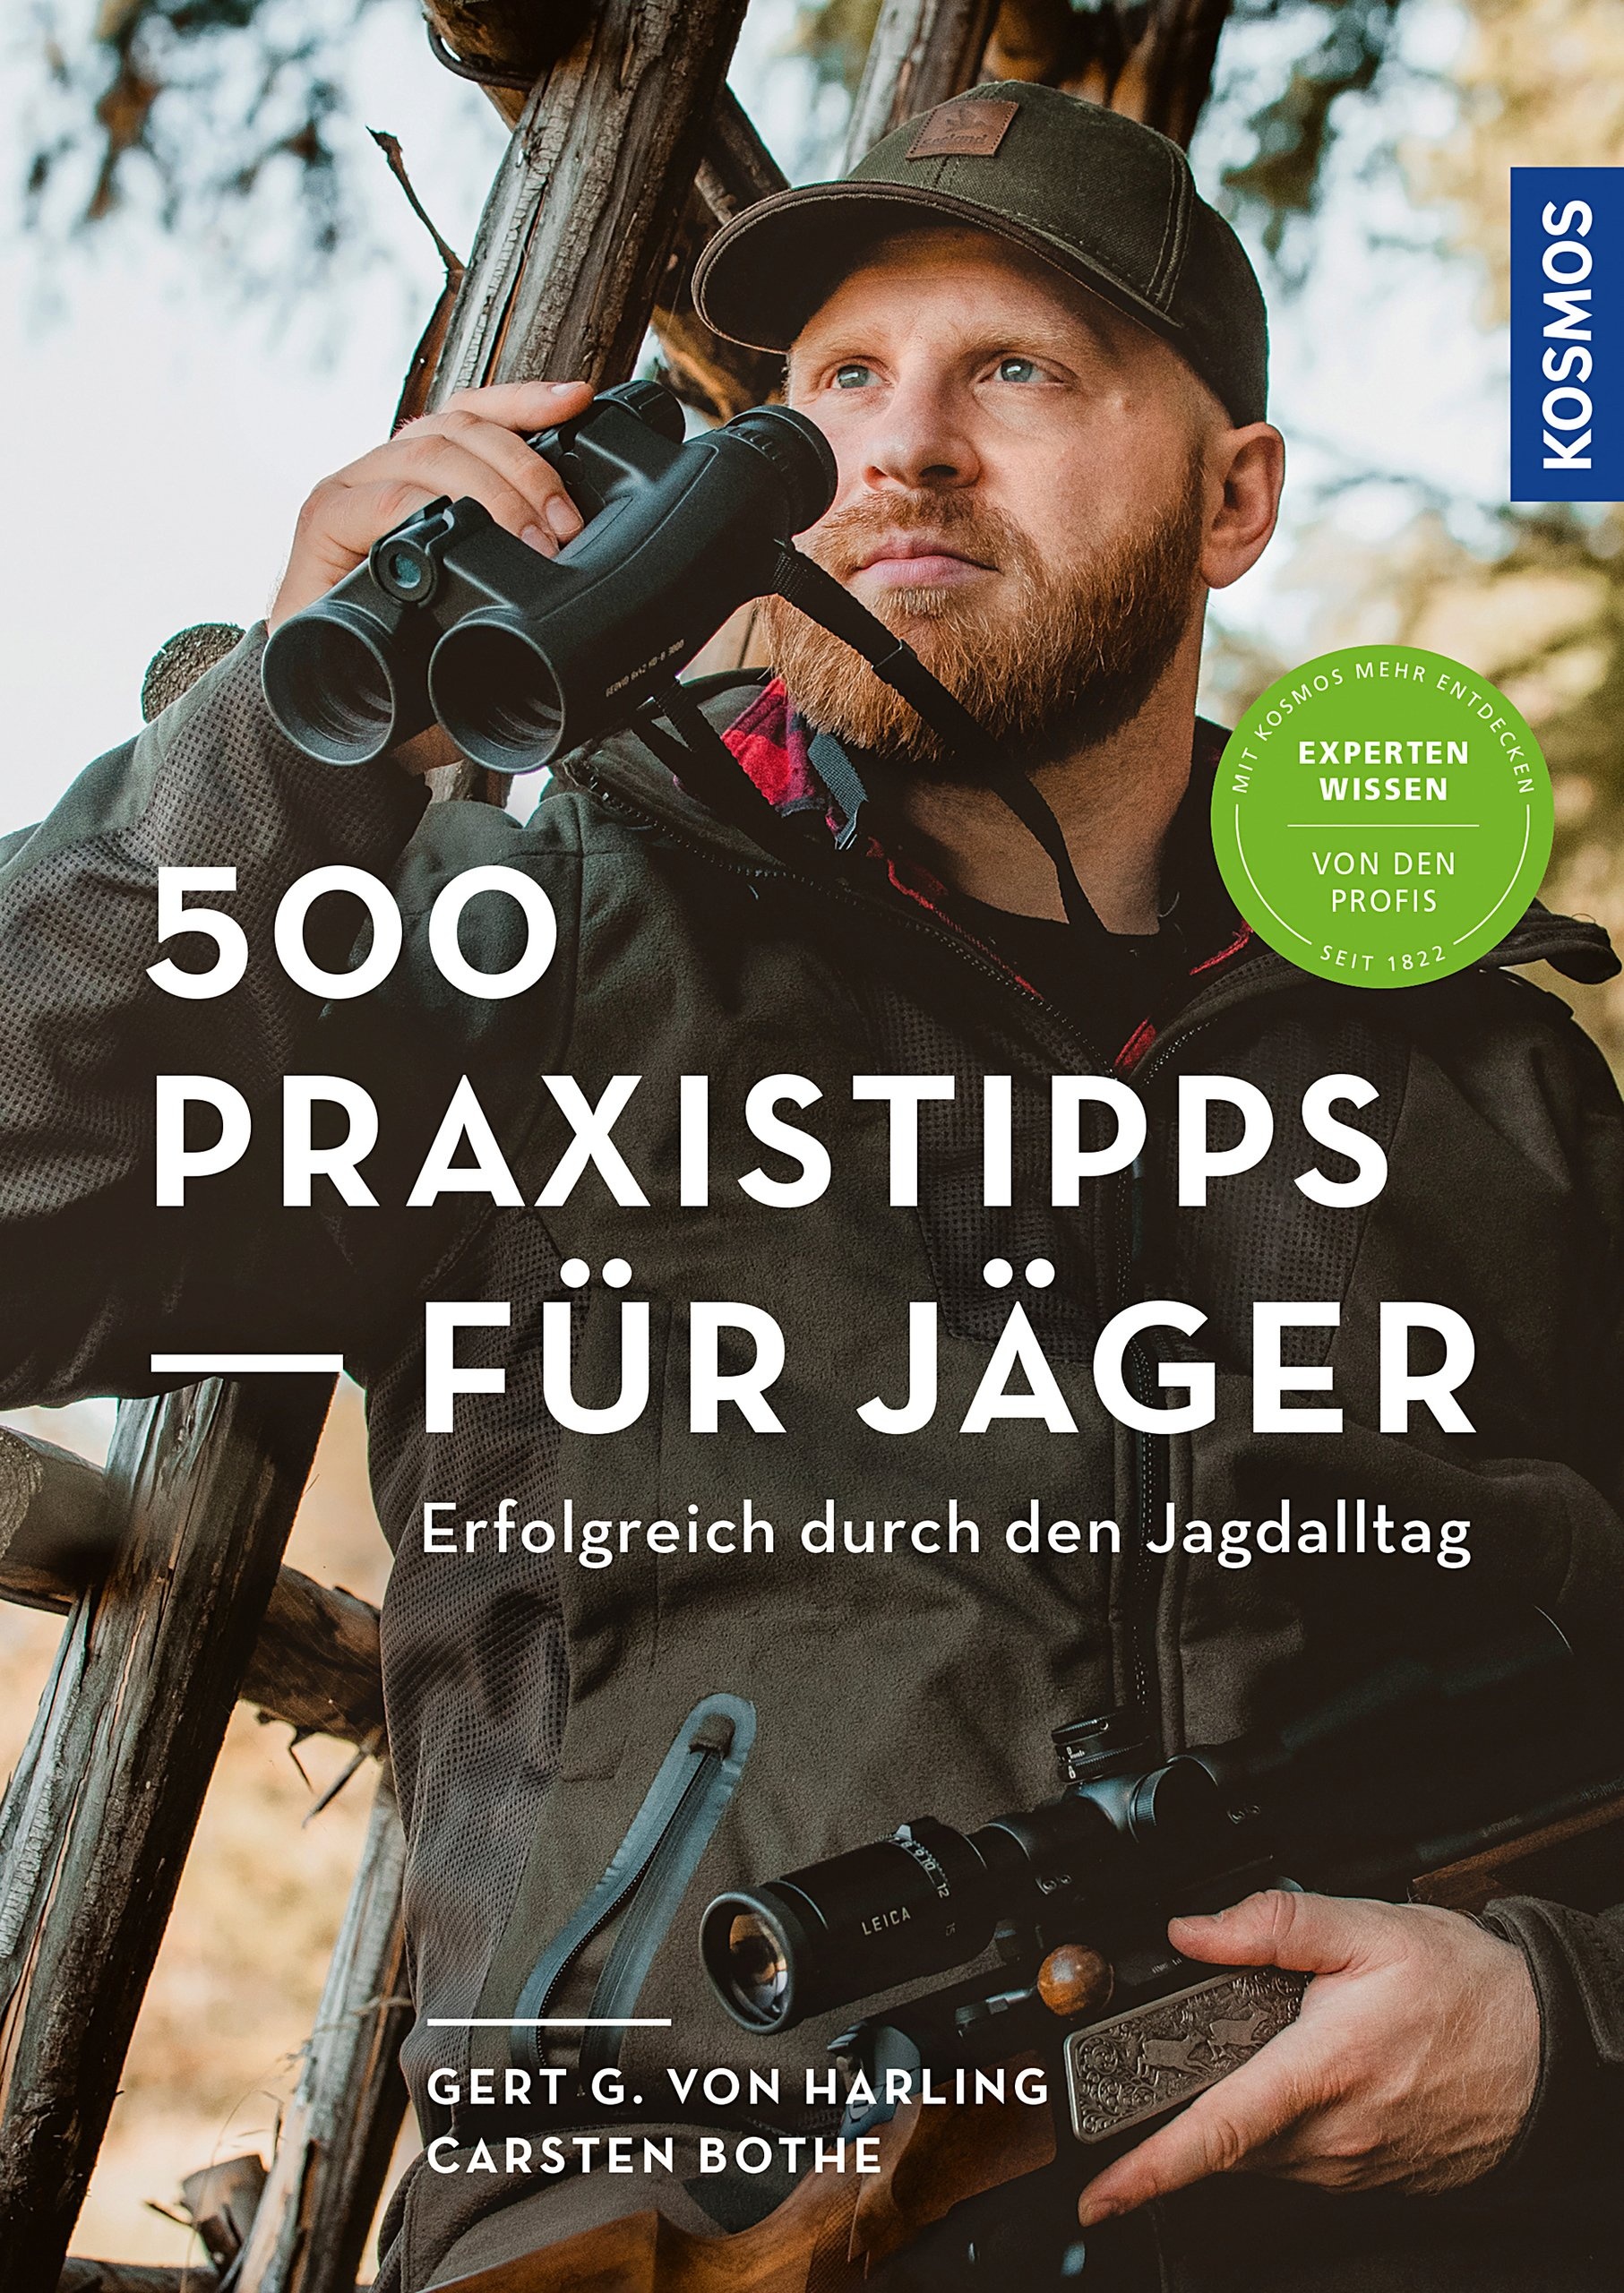 500 Praxistipps für Jäger – Erfolgreich durch den Jagdalltag